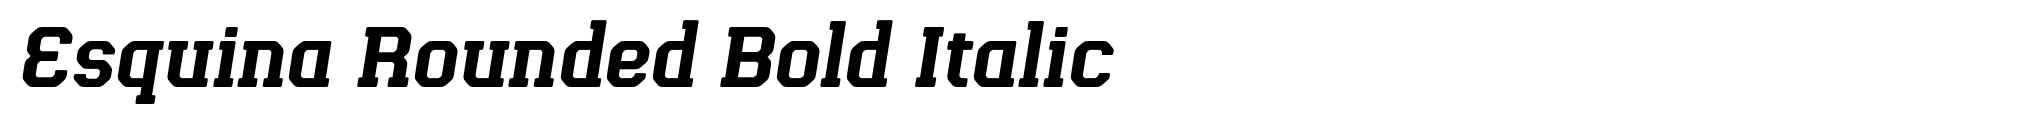 Esquina Rounded Bold Italic image